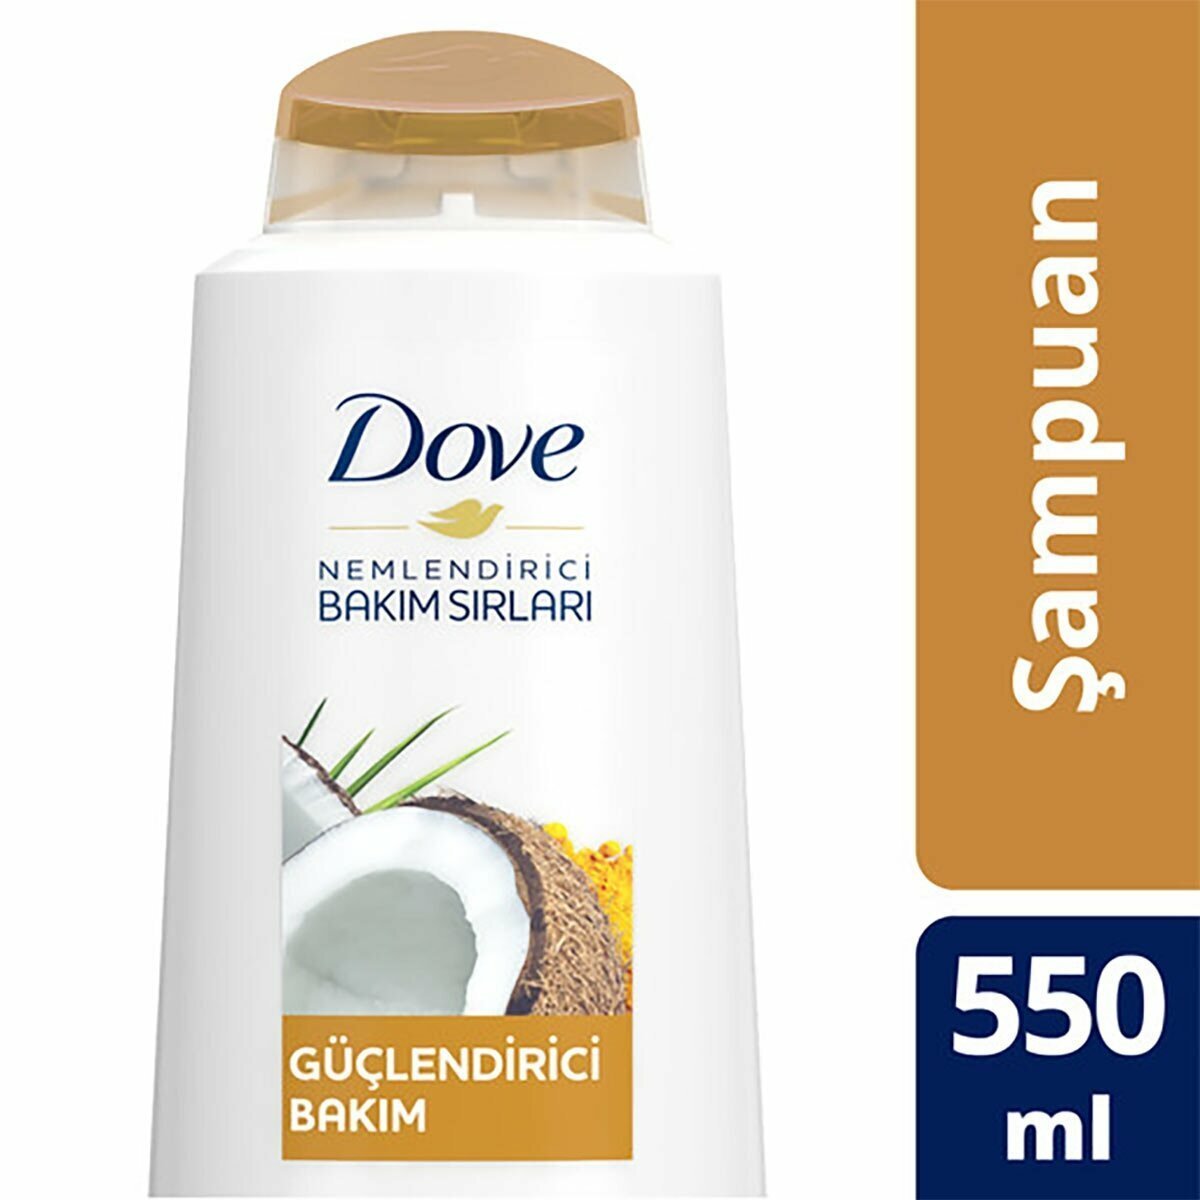 Dove Hindistan Cevizi Yağı ve Zerdeçal Yağı ile Güçlendirici Bakım Şampuanı 550 ml